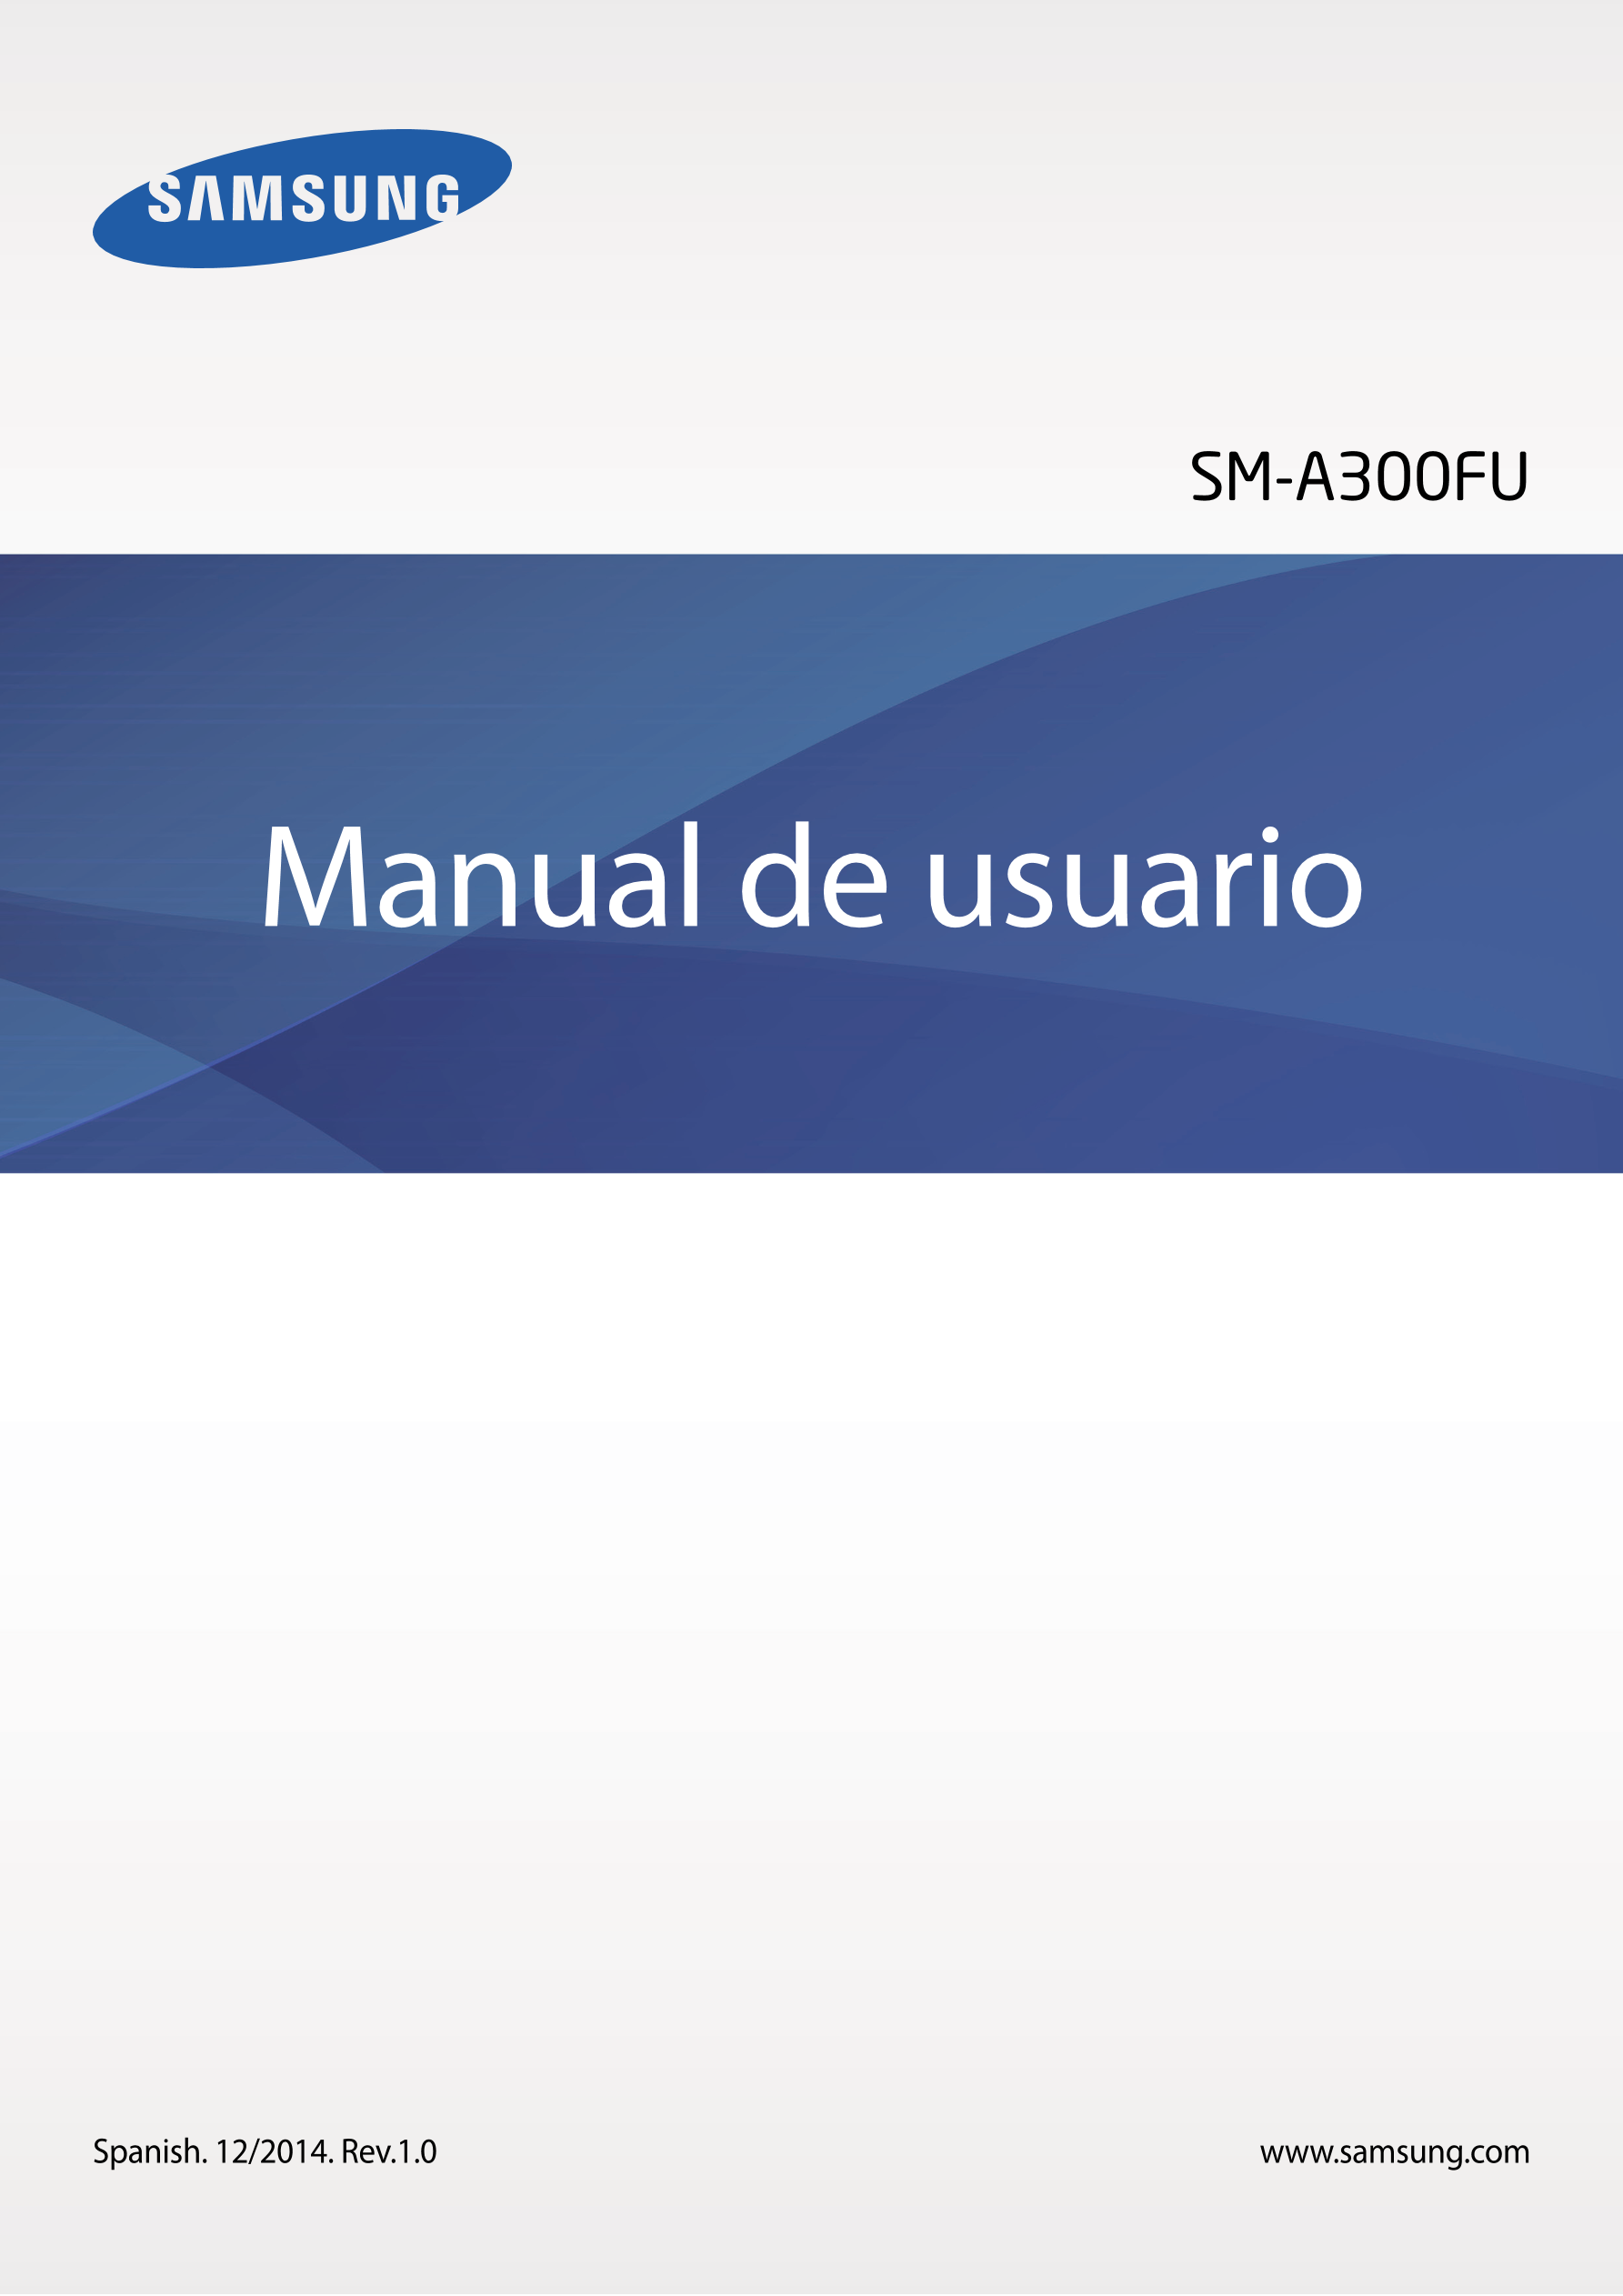 SM-A300FU
Manual de usuario
Spanish. 12/2014. Rev.1.0 www.samsung.com